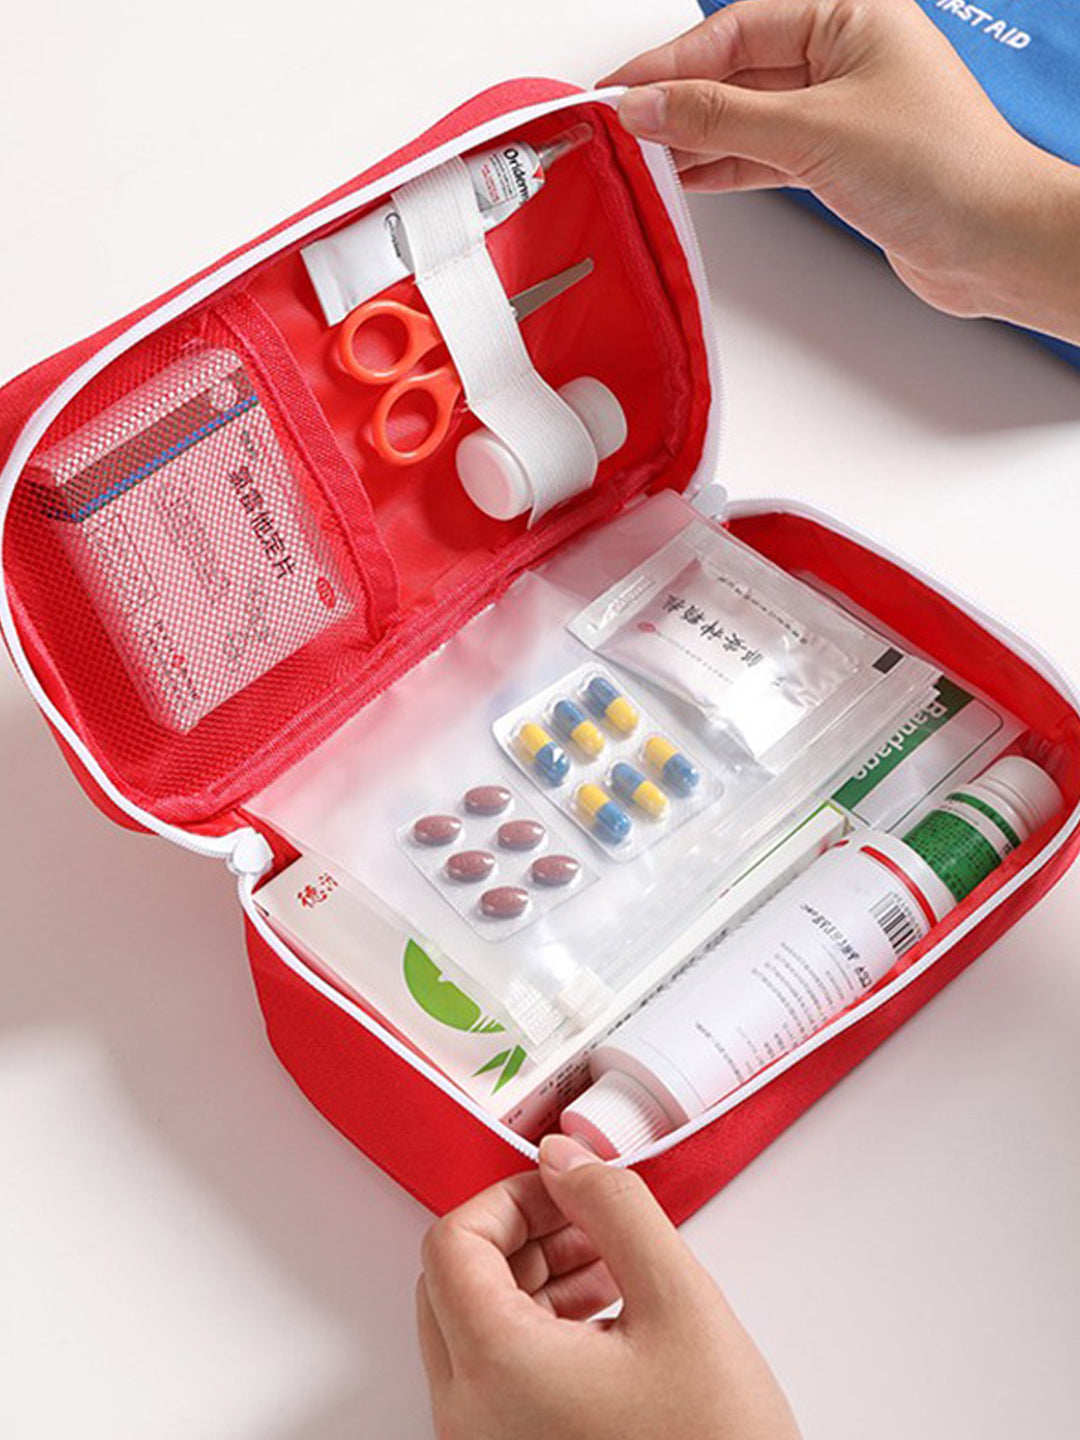 VON CASA Rectangular Polyester First Aid Box - Red